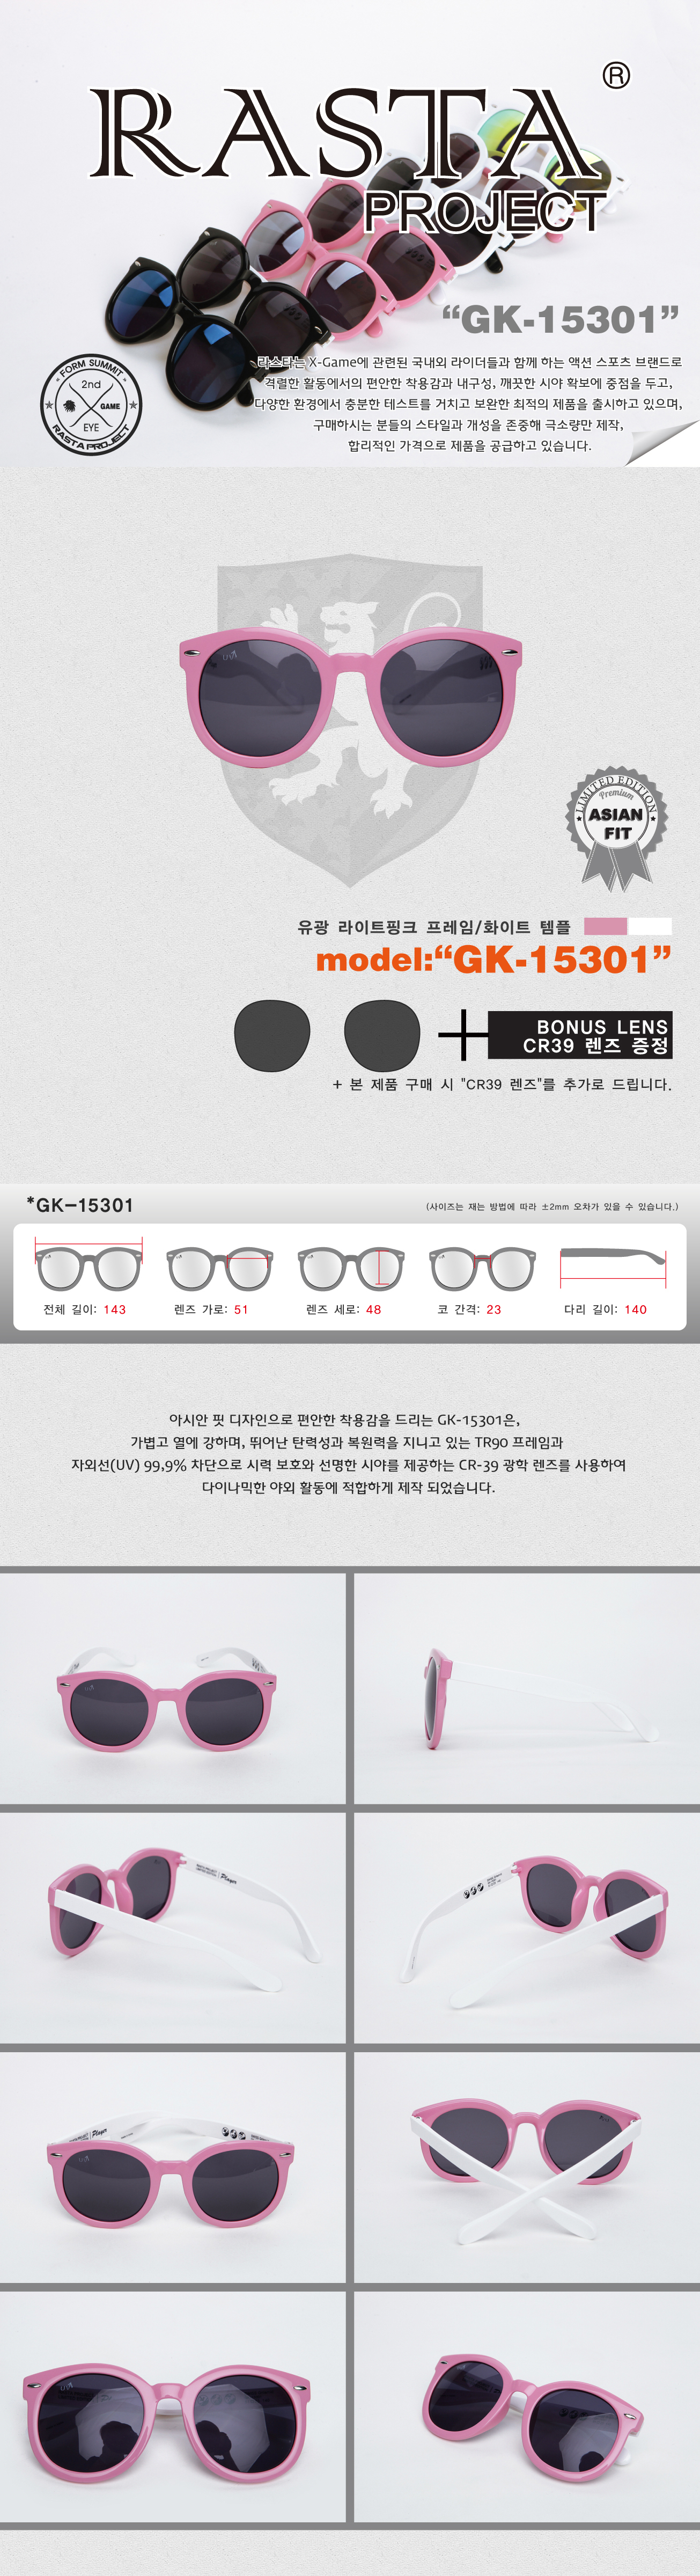 GK-15301 Gloss LightPink/White